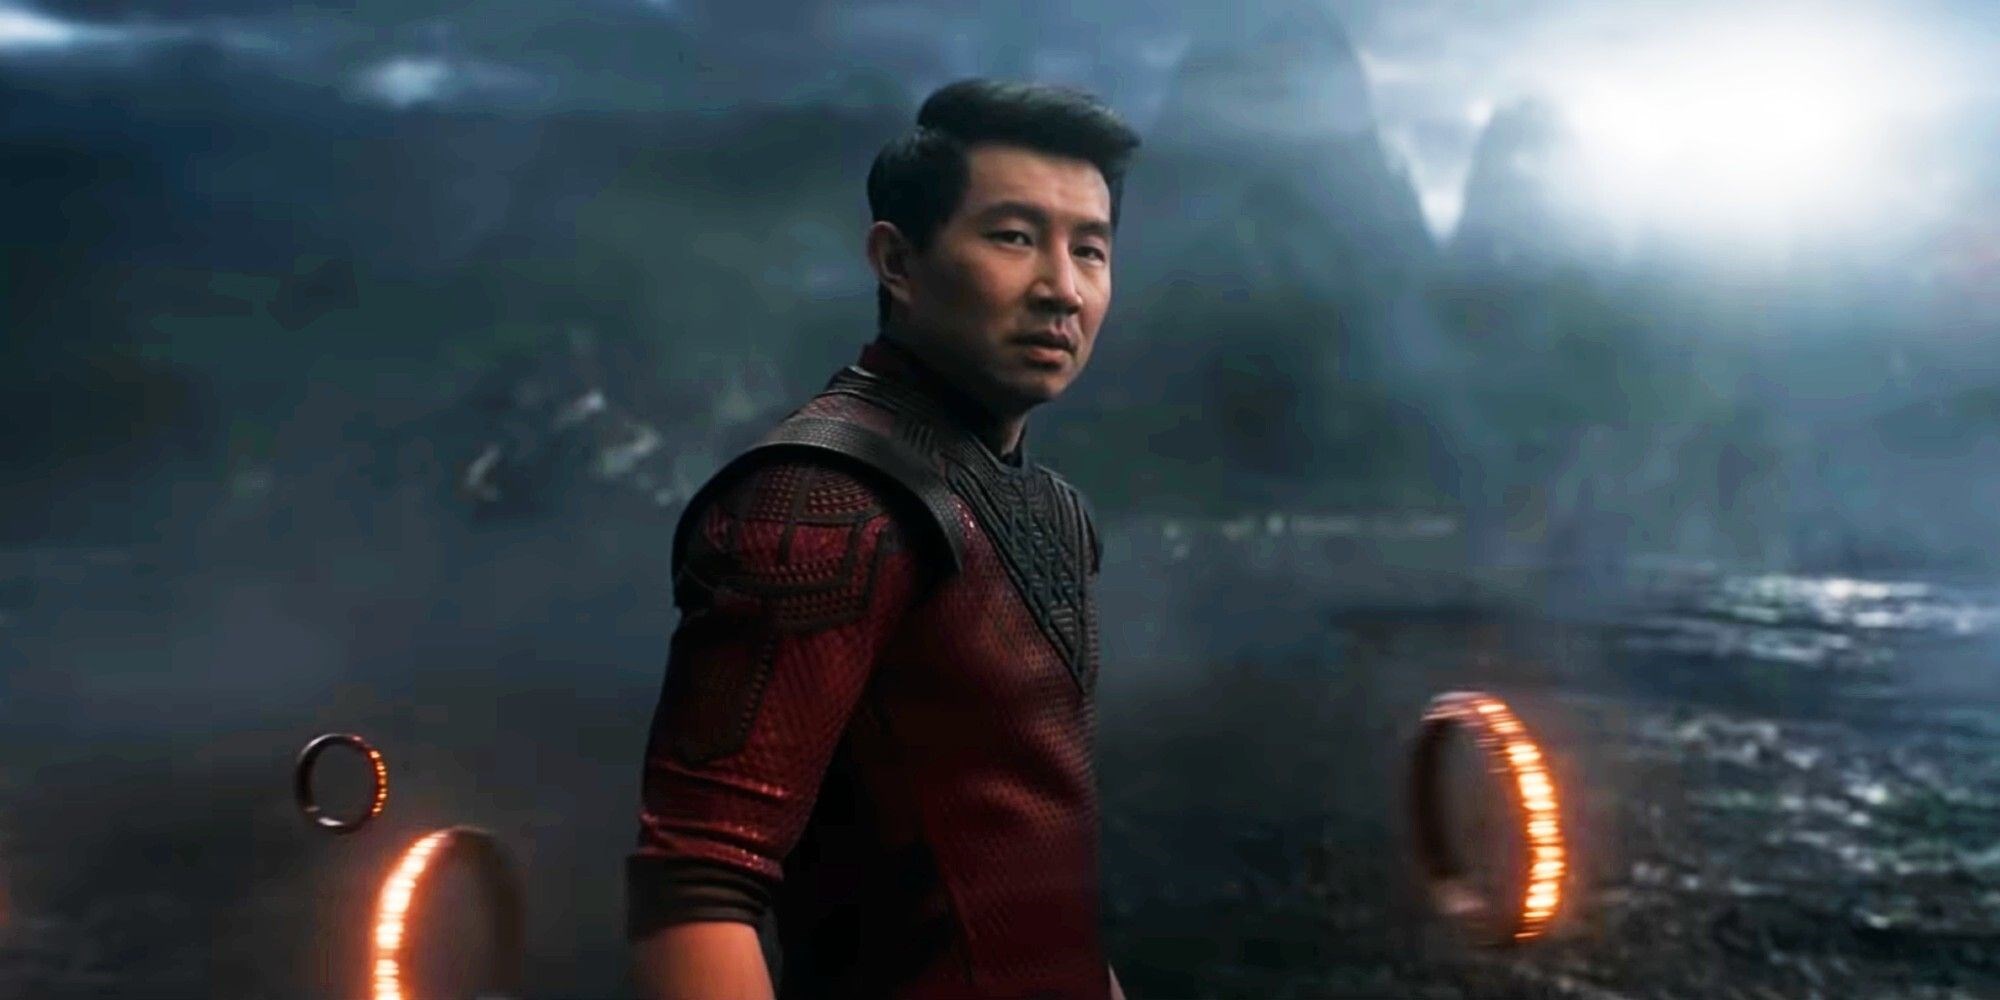 Marvel filmi Shang-Chi'ten karakterlerin tanıtıldığı görseller